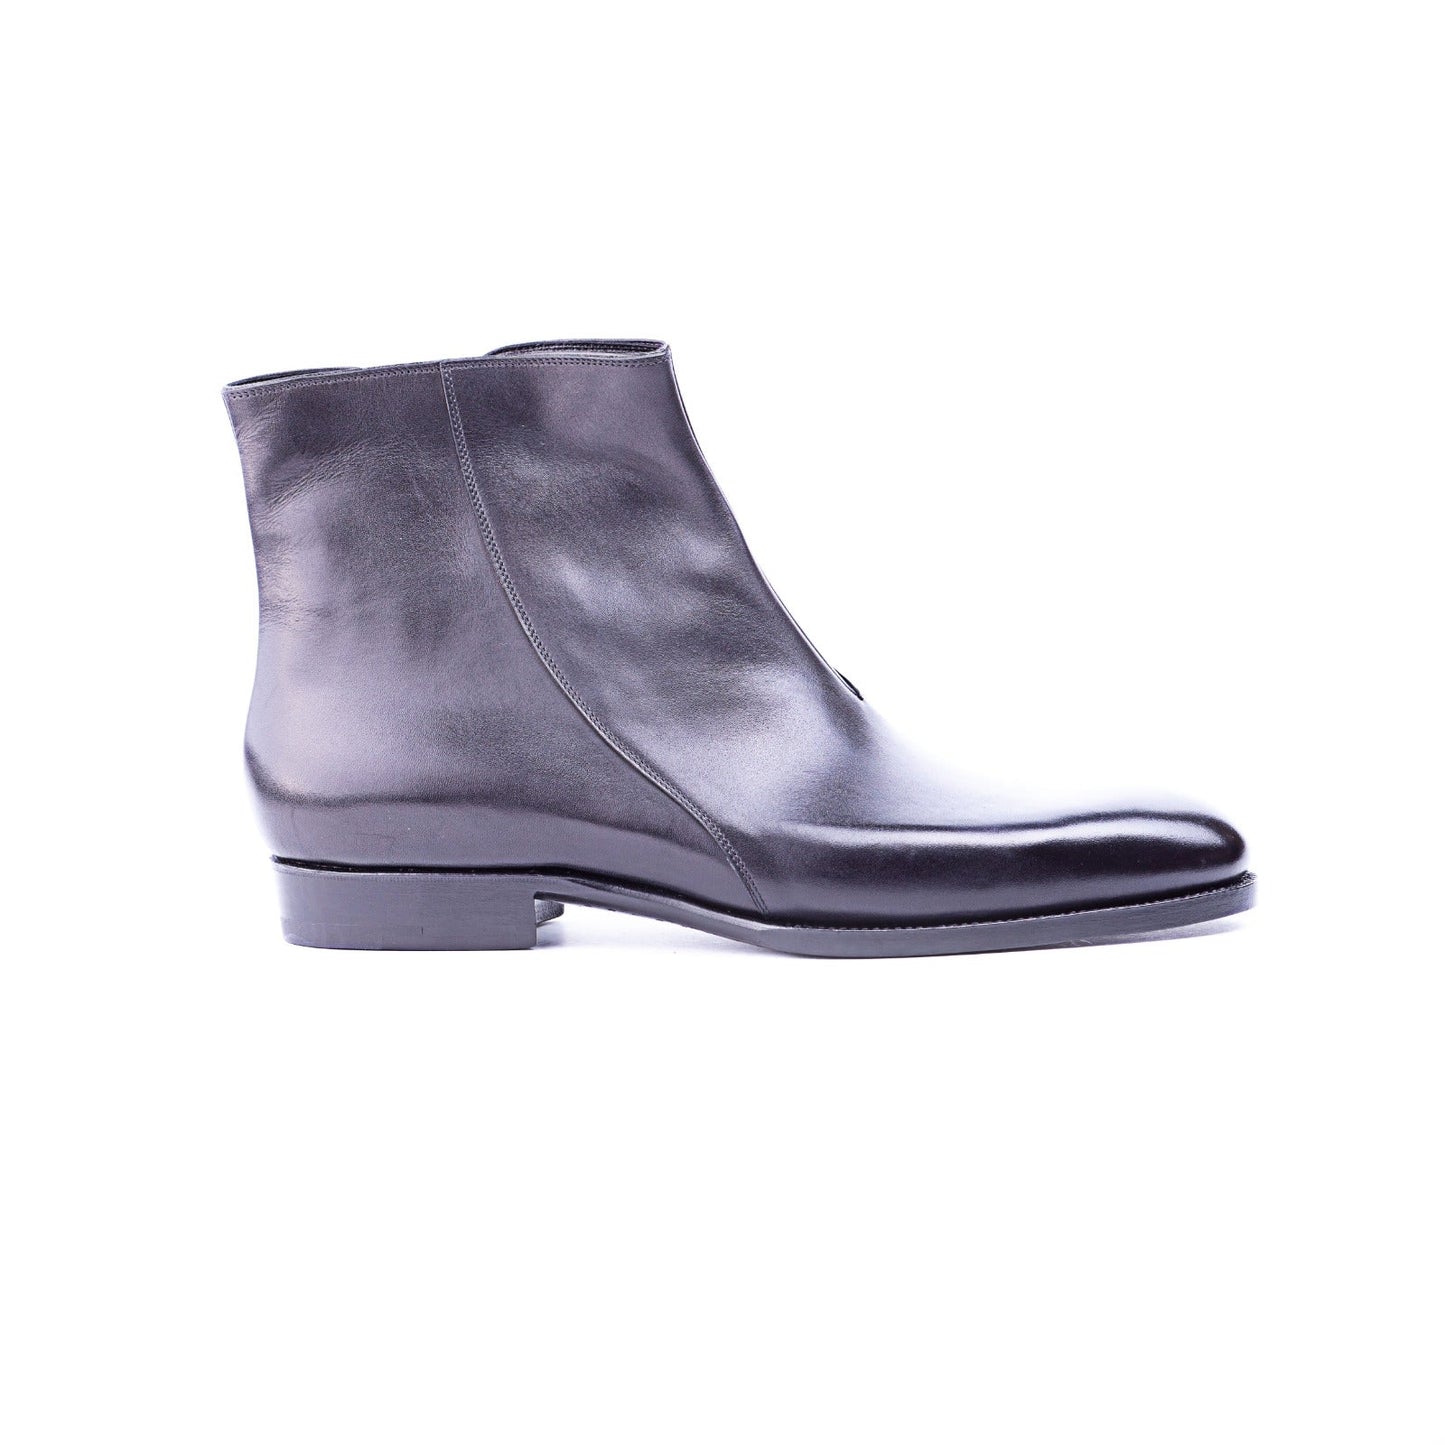 Plain boot with zipper, 4 cm higher